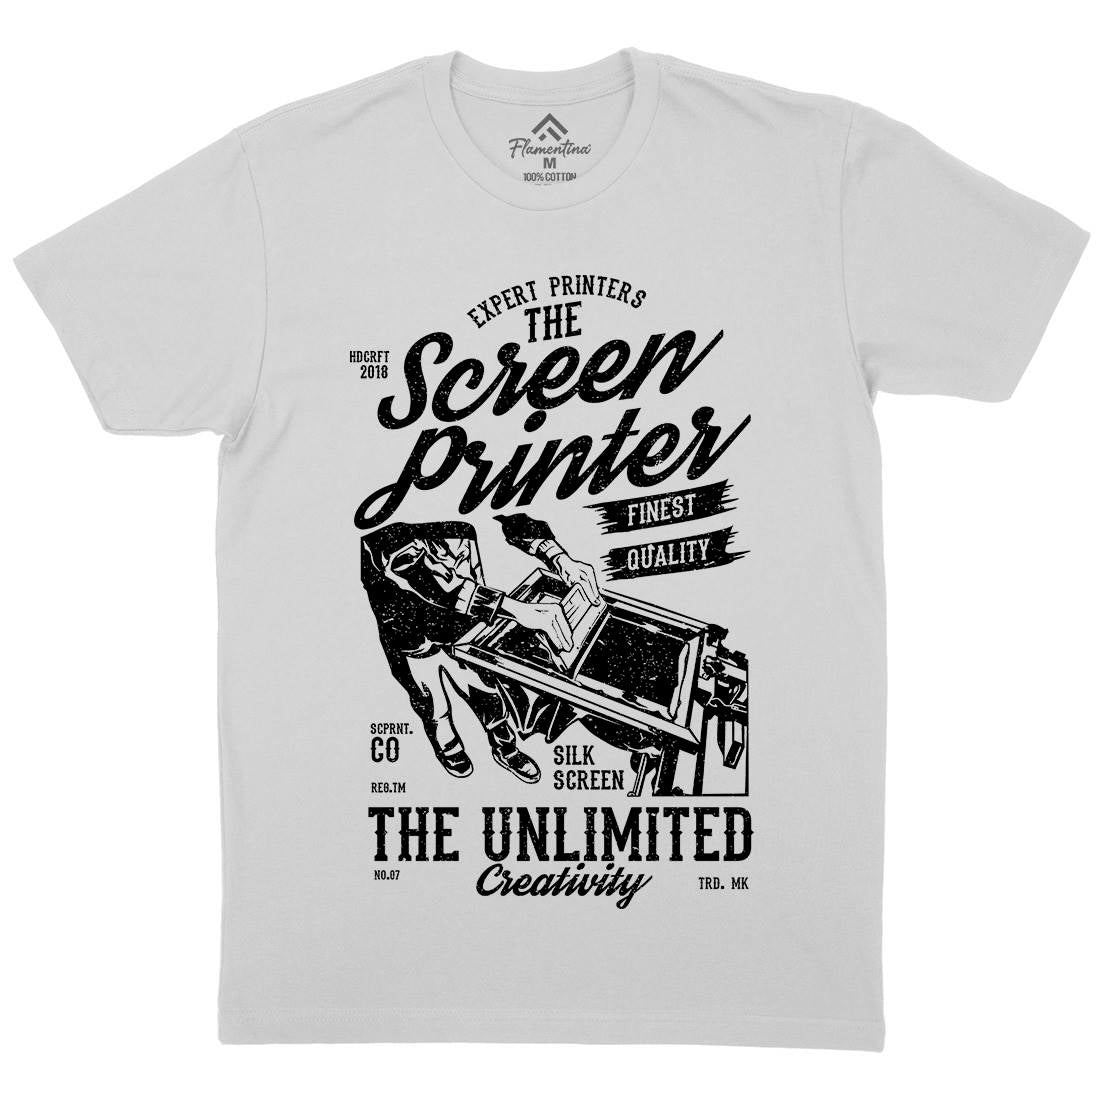 Screen Printer Mens Crew Neck T-Shirt Work A775